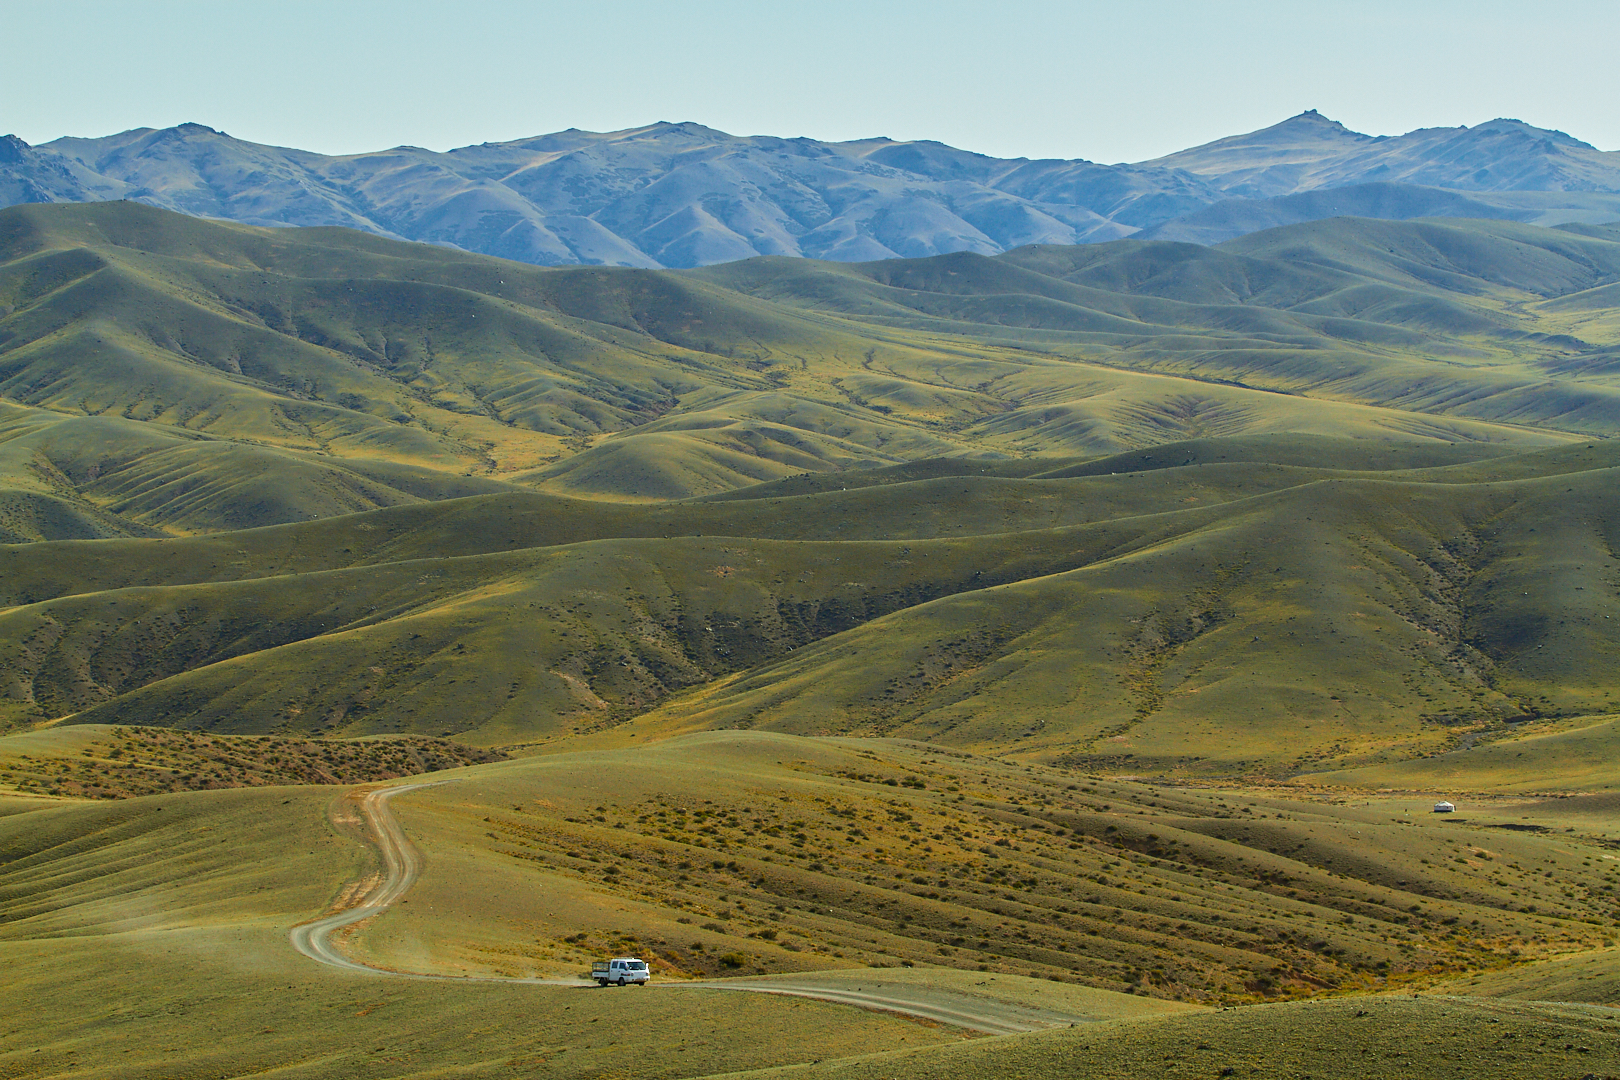 Pvk Photo | Photographe Professionnel | Camion traversant les montagnes de Khangai Nuruu en Mongolie Centrale